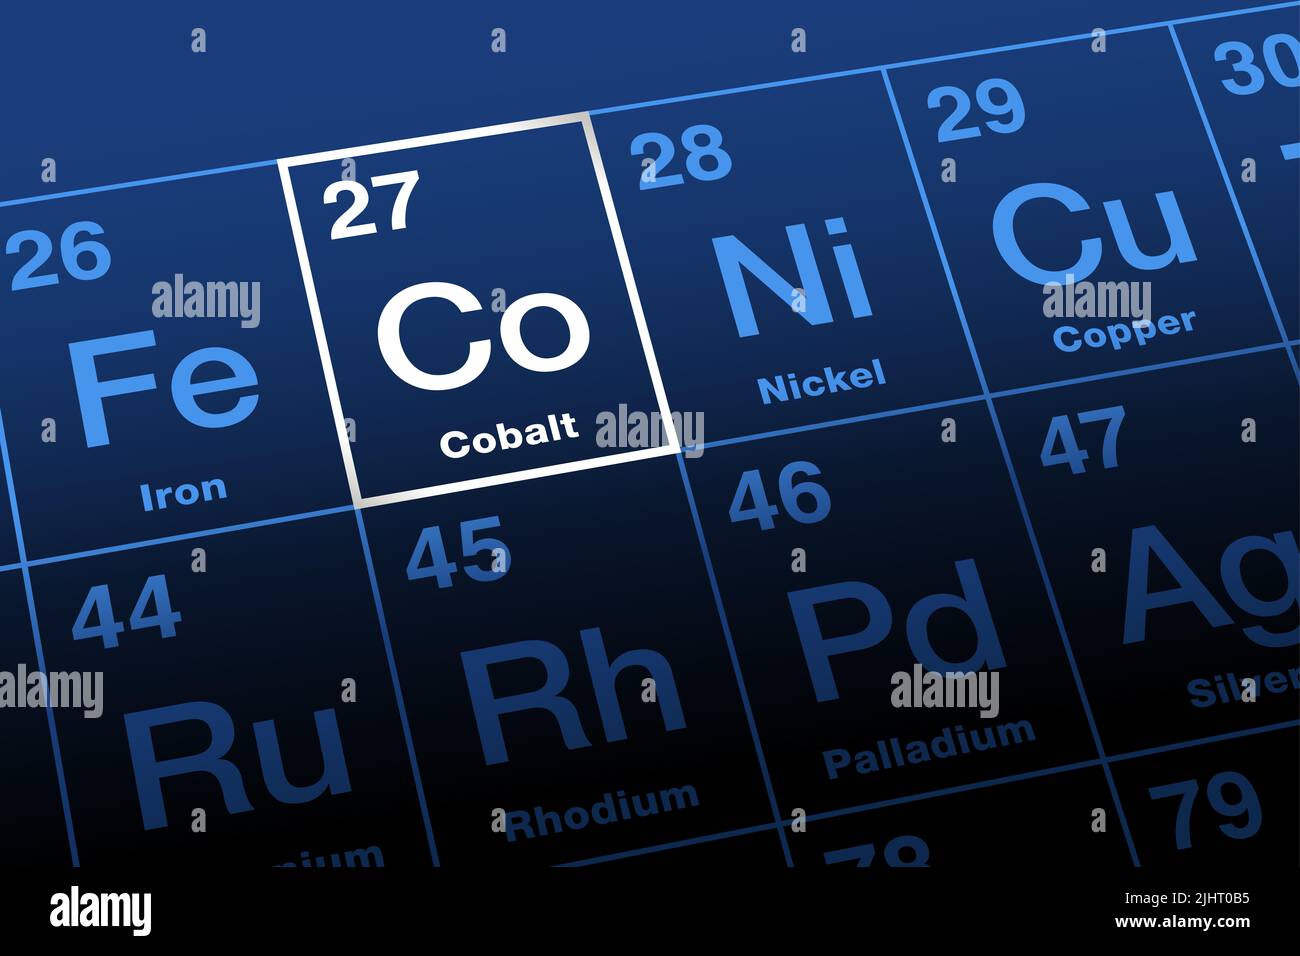 Cobalto su tavola periodica degli elementi. Metallo di transizione ferromagnetico, con il simbolo dell'elemento Co, e con il numero atomico 27. Foto Stock